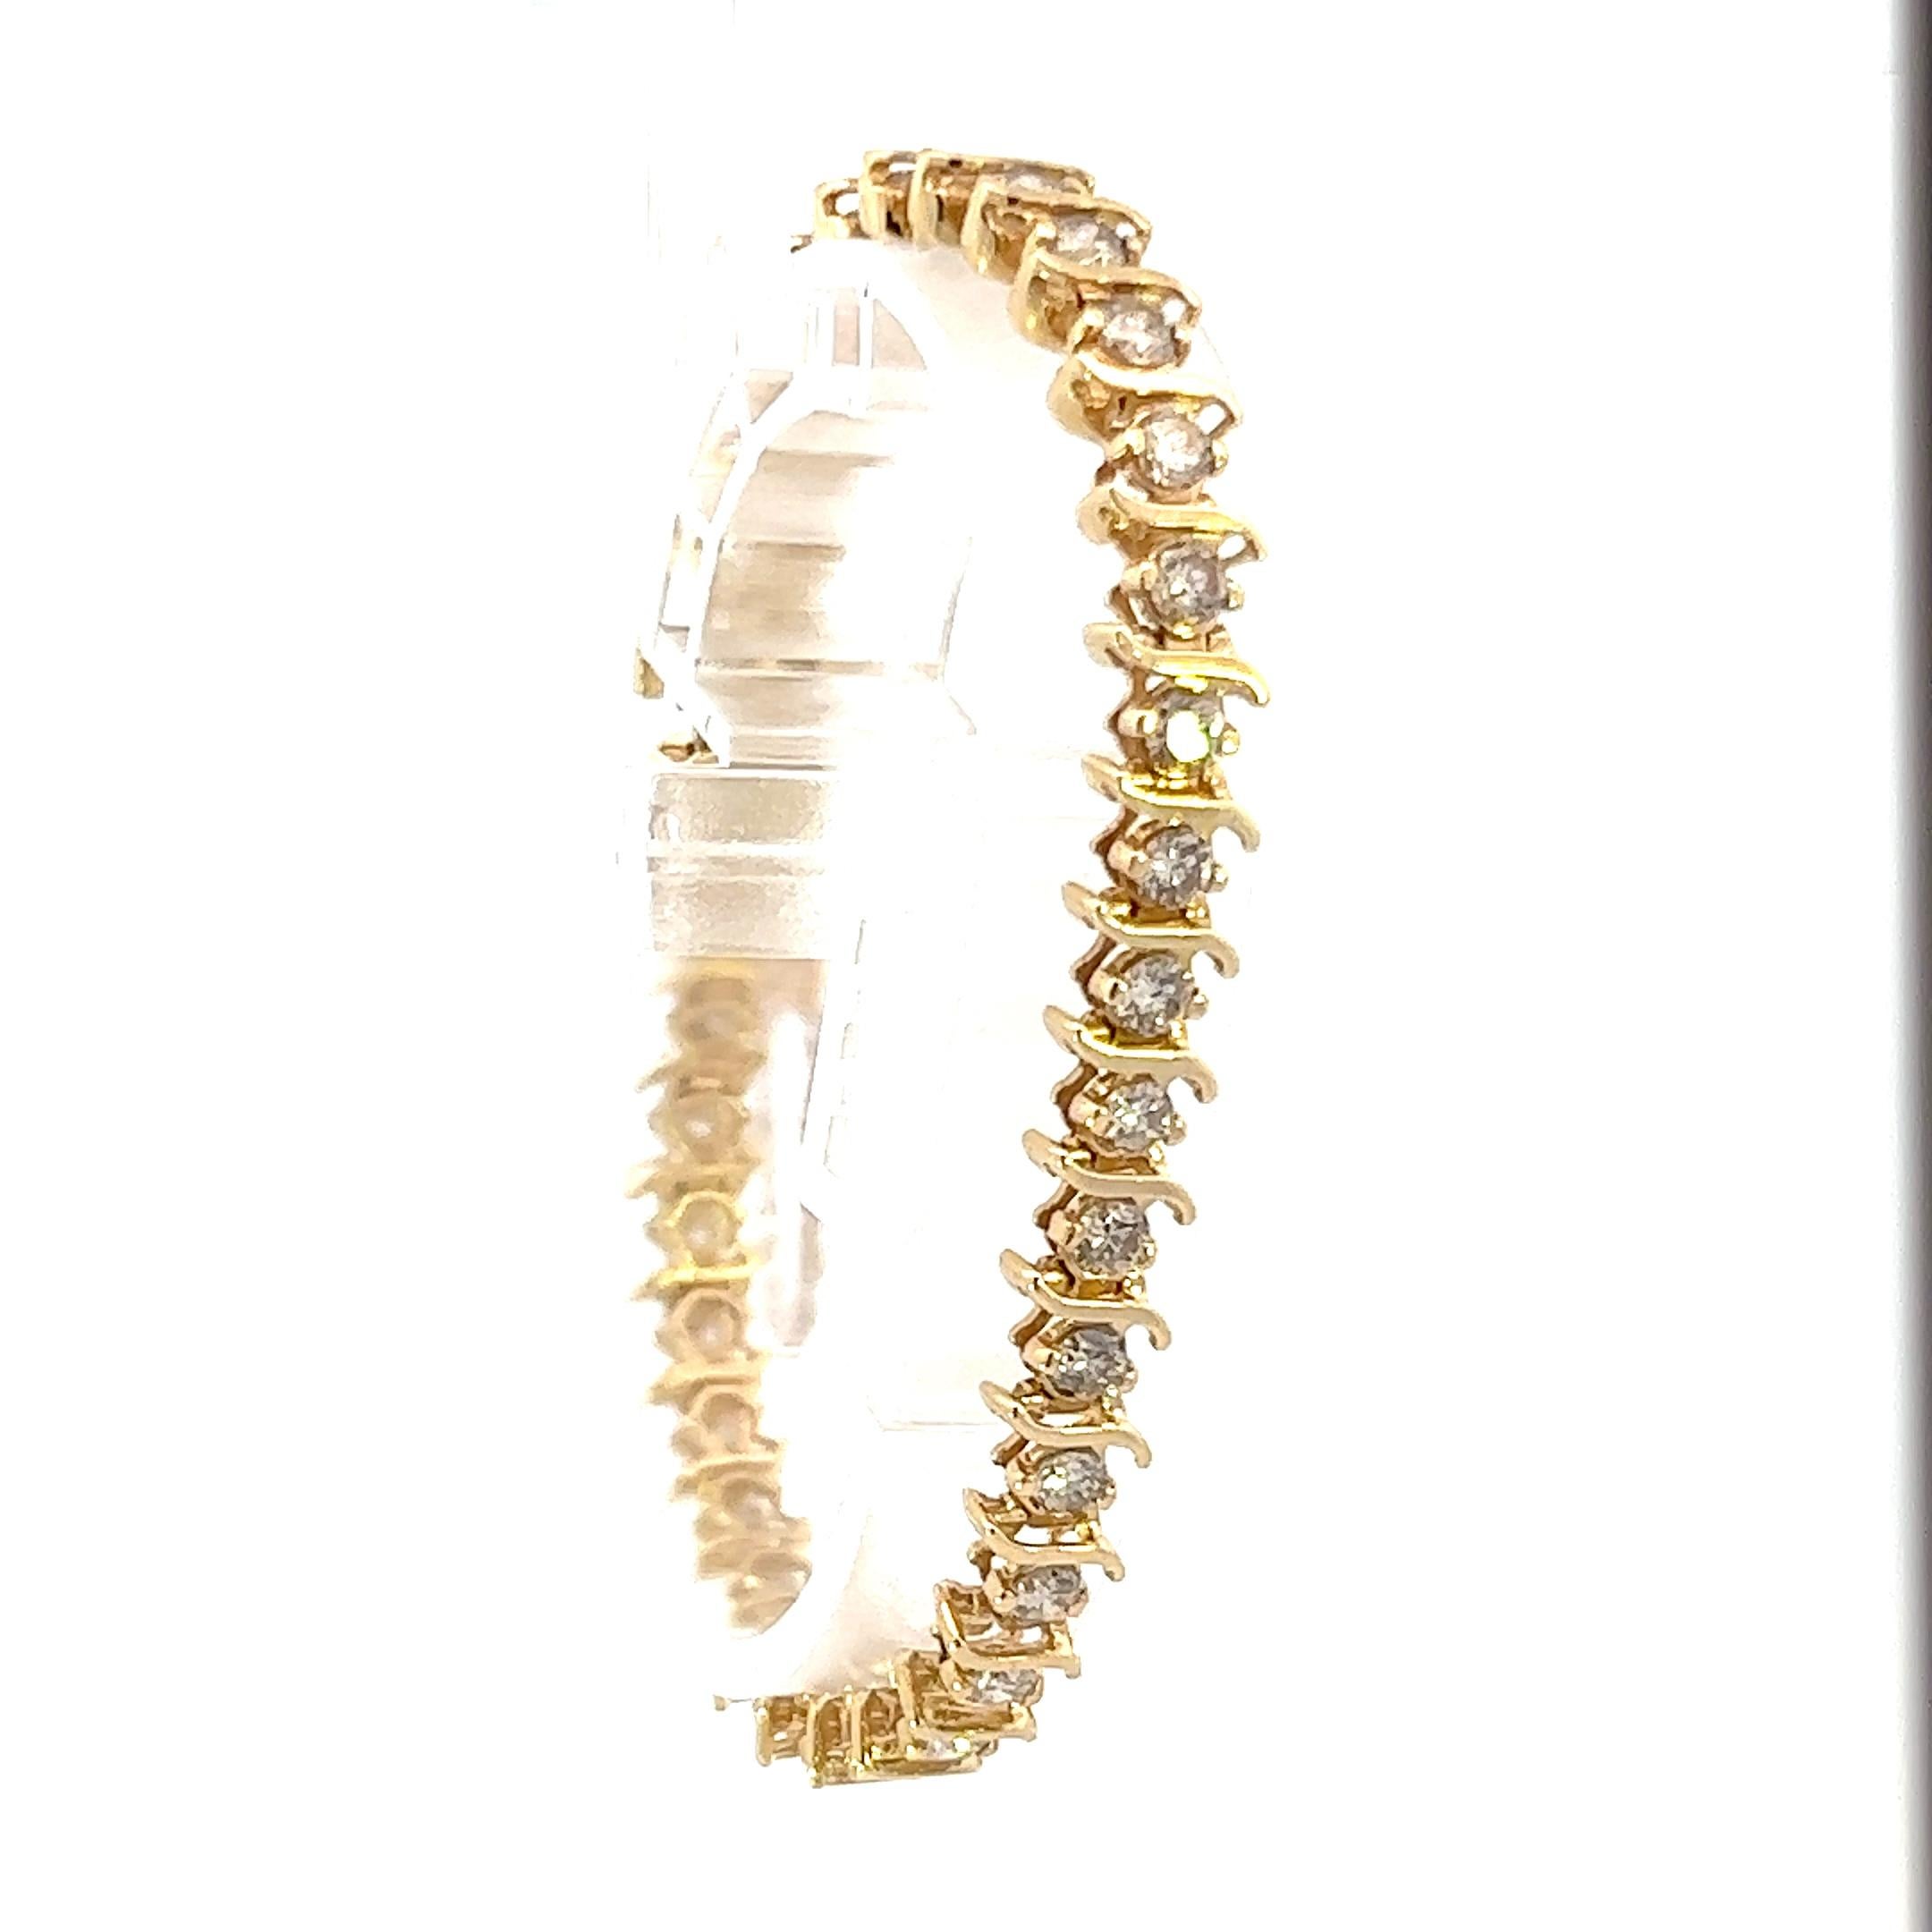 Dies ist ein einzigartiges 14k Gelbgold zeitgenössischen Diamant-Armband. Dieses Armband aus 14-karätigem Gelbgold hat einen satten Farbton und ist zeitlos schön. Dieses Armband aus 14-karätigem Gelbgold hat zwar eine klassische Ausstrahlung, aber